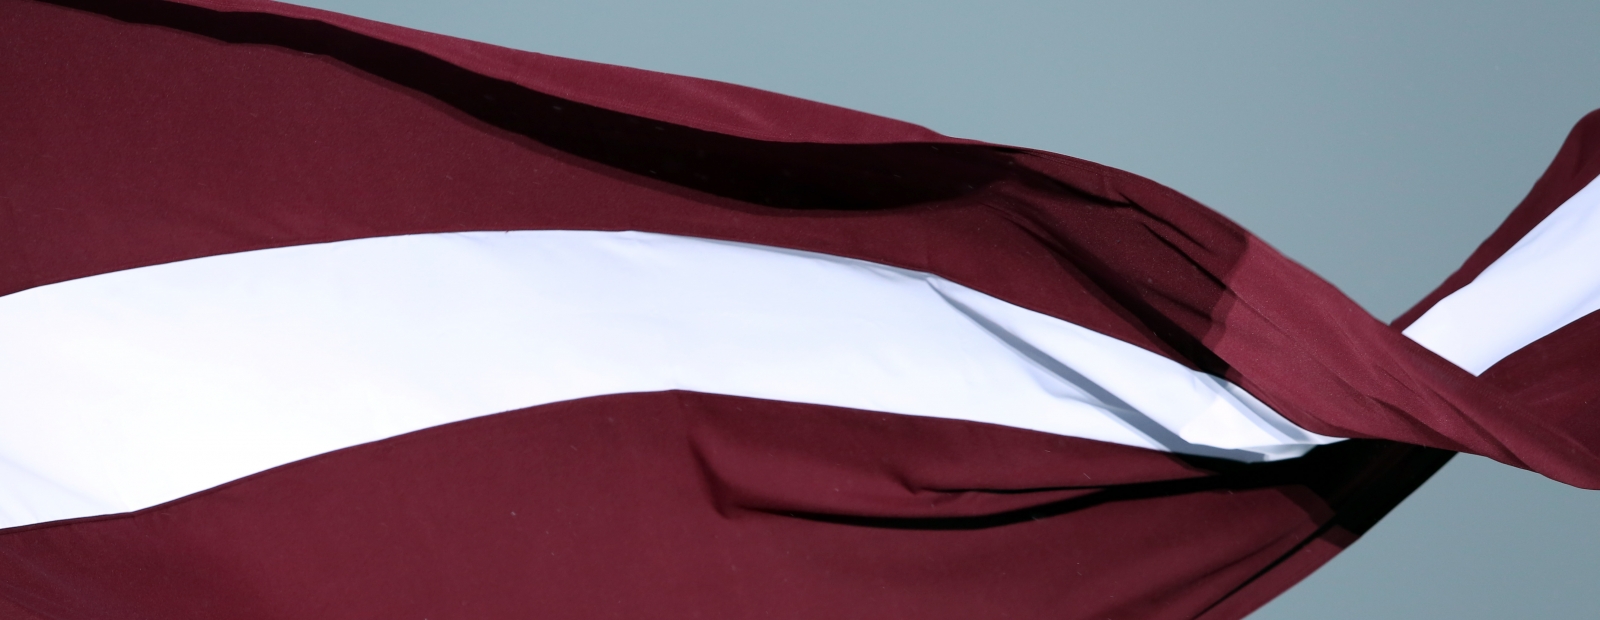 18. novembrī īpašos pasākumos visā Latvijā tiks sagaidīts saullēkts un pacelts Latvijas karogs